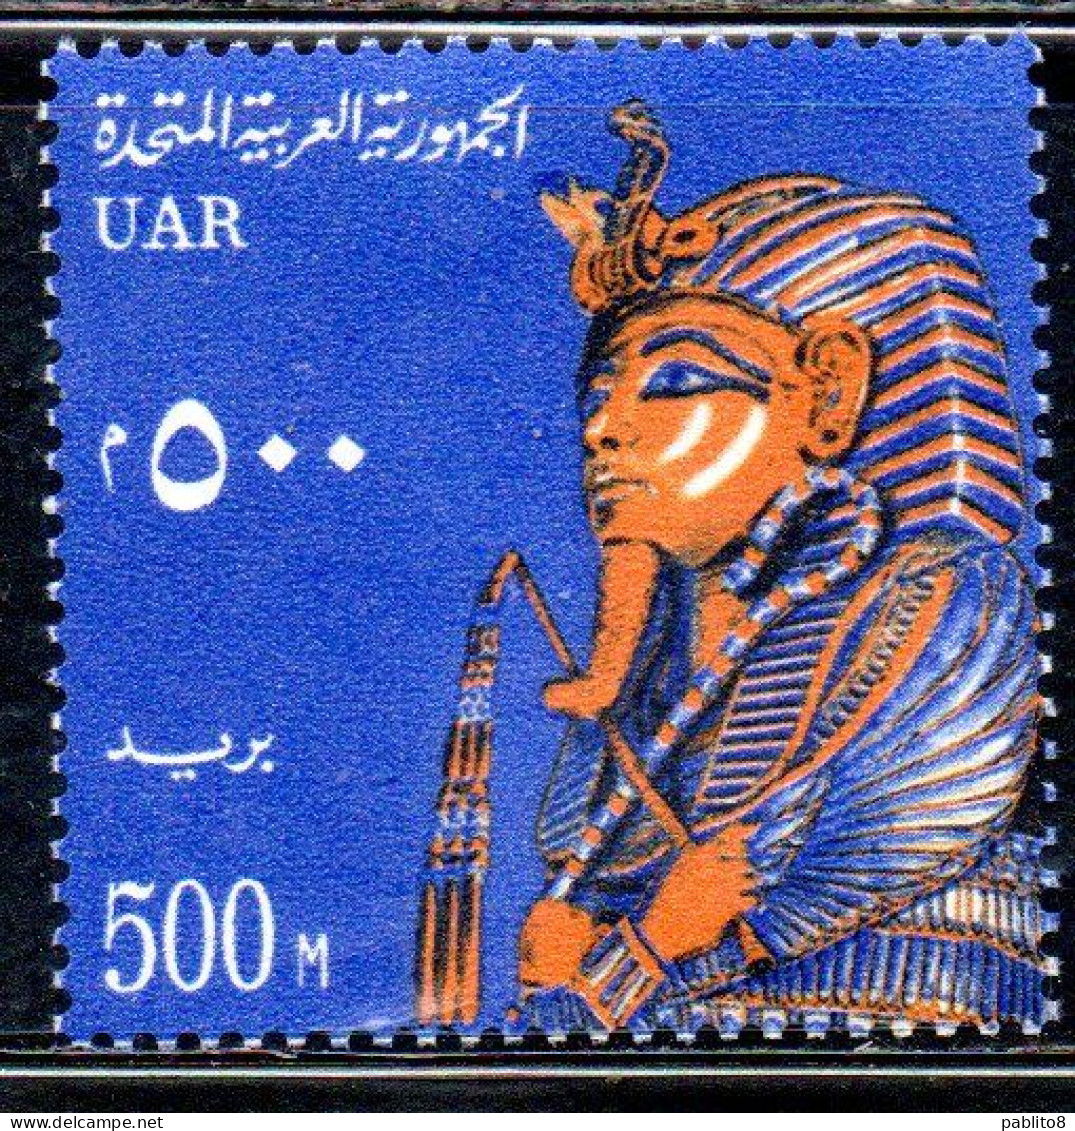 UAR EGYPT EGITTO 1964 1967 FUNERARI MASK C.F.TUTANKHAMEN 500m MNH - Ungebraucht